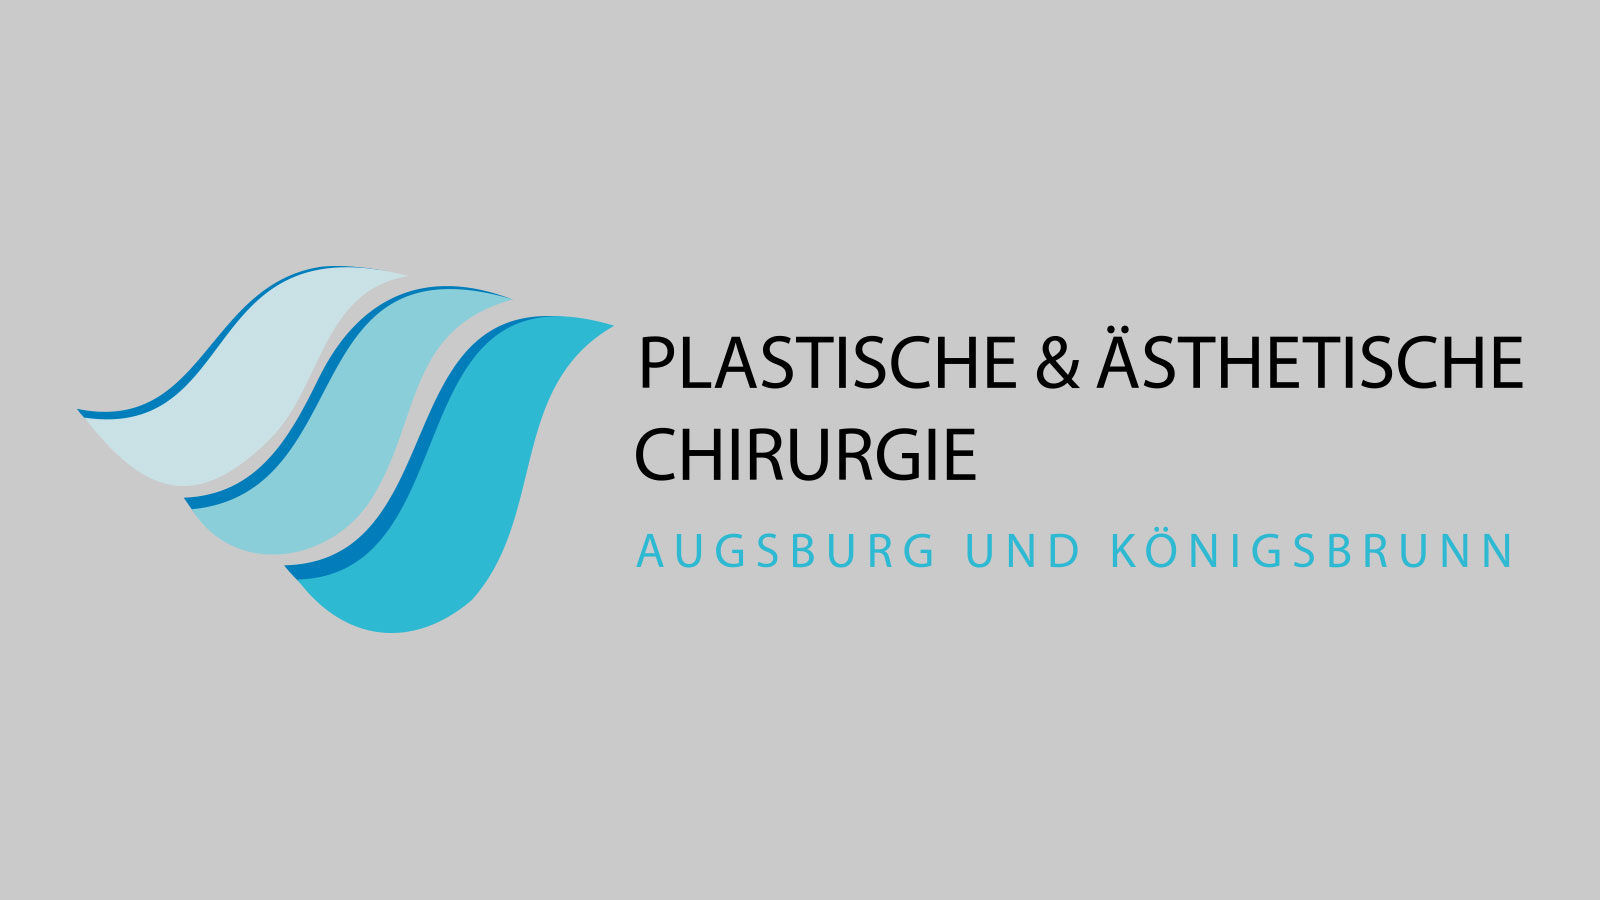 Plastische & Ästhetische Chirurgie Augsburg und Königsbrunn